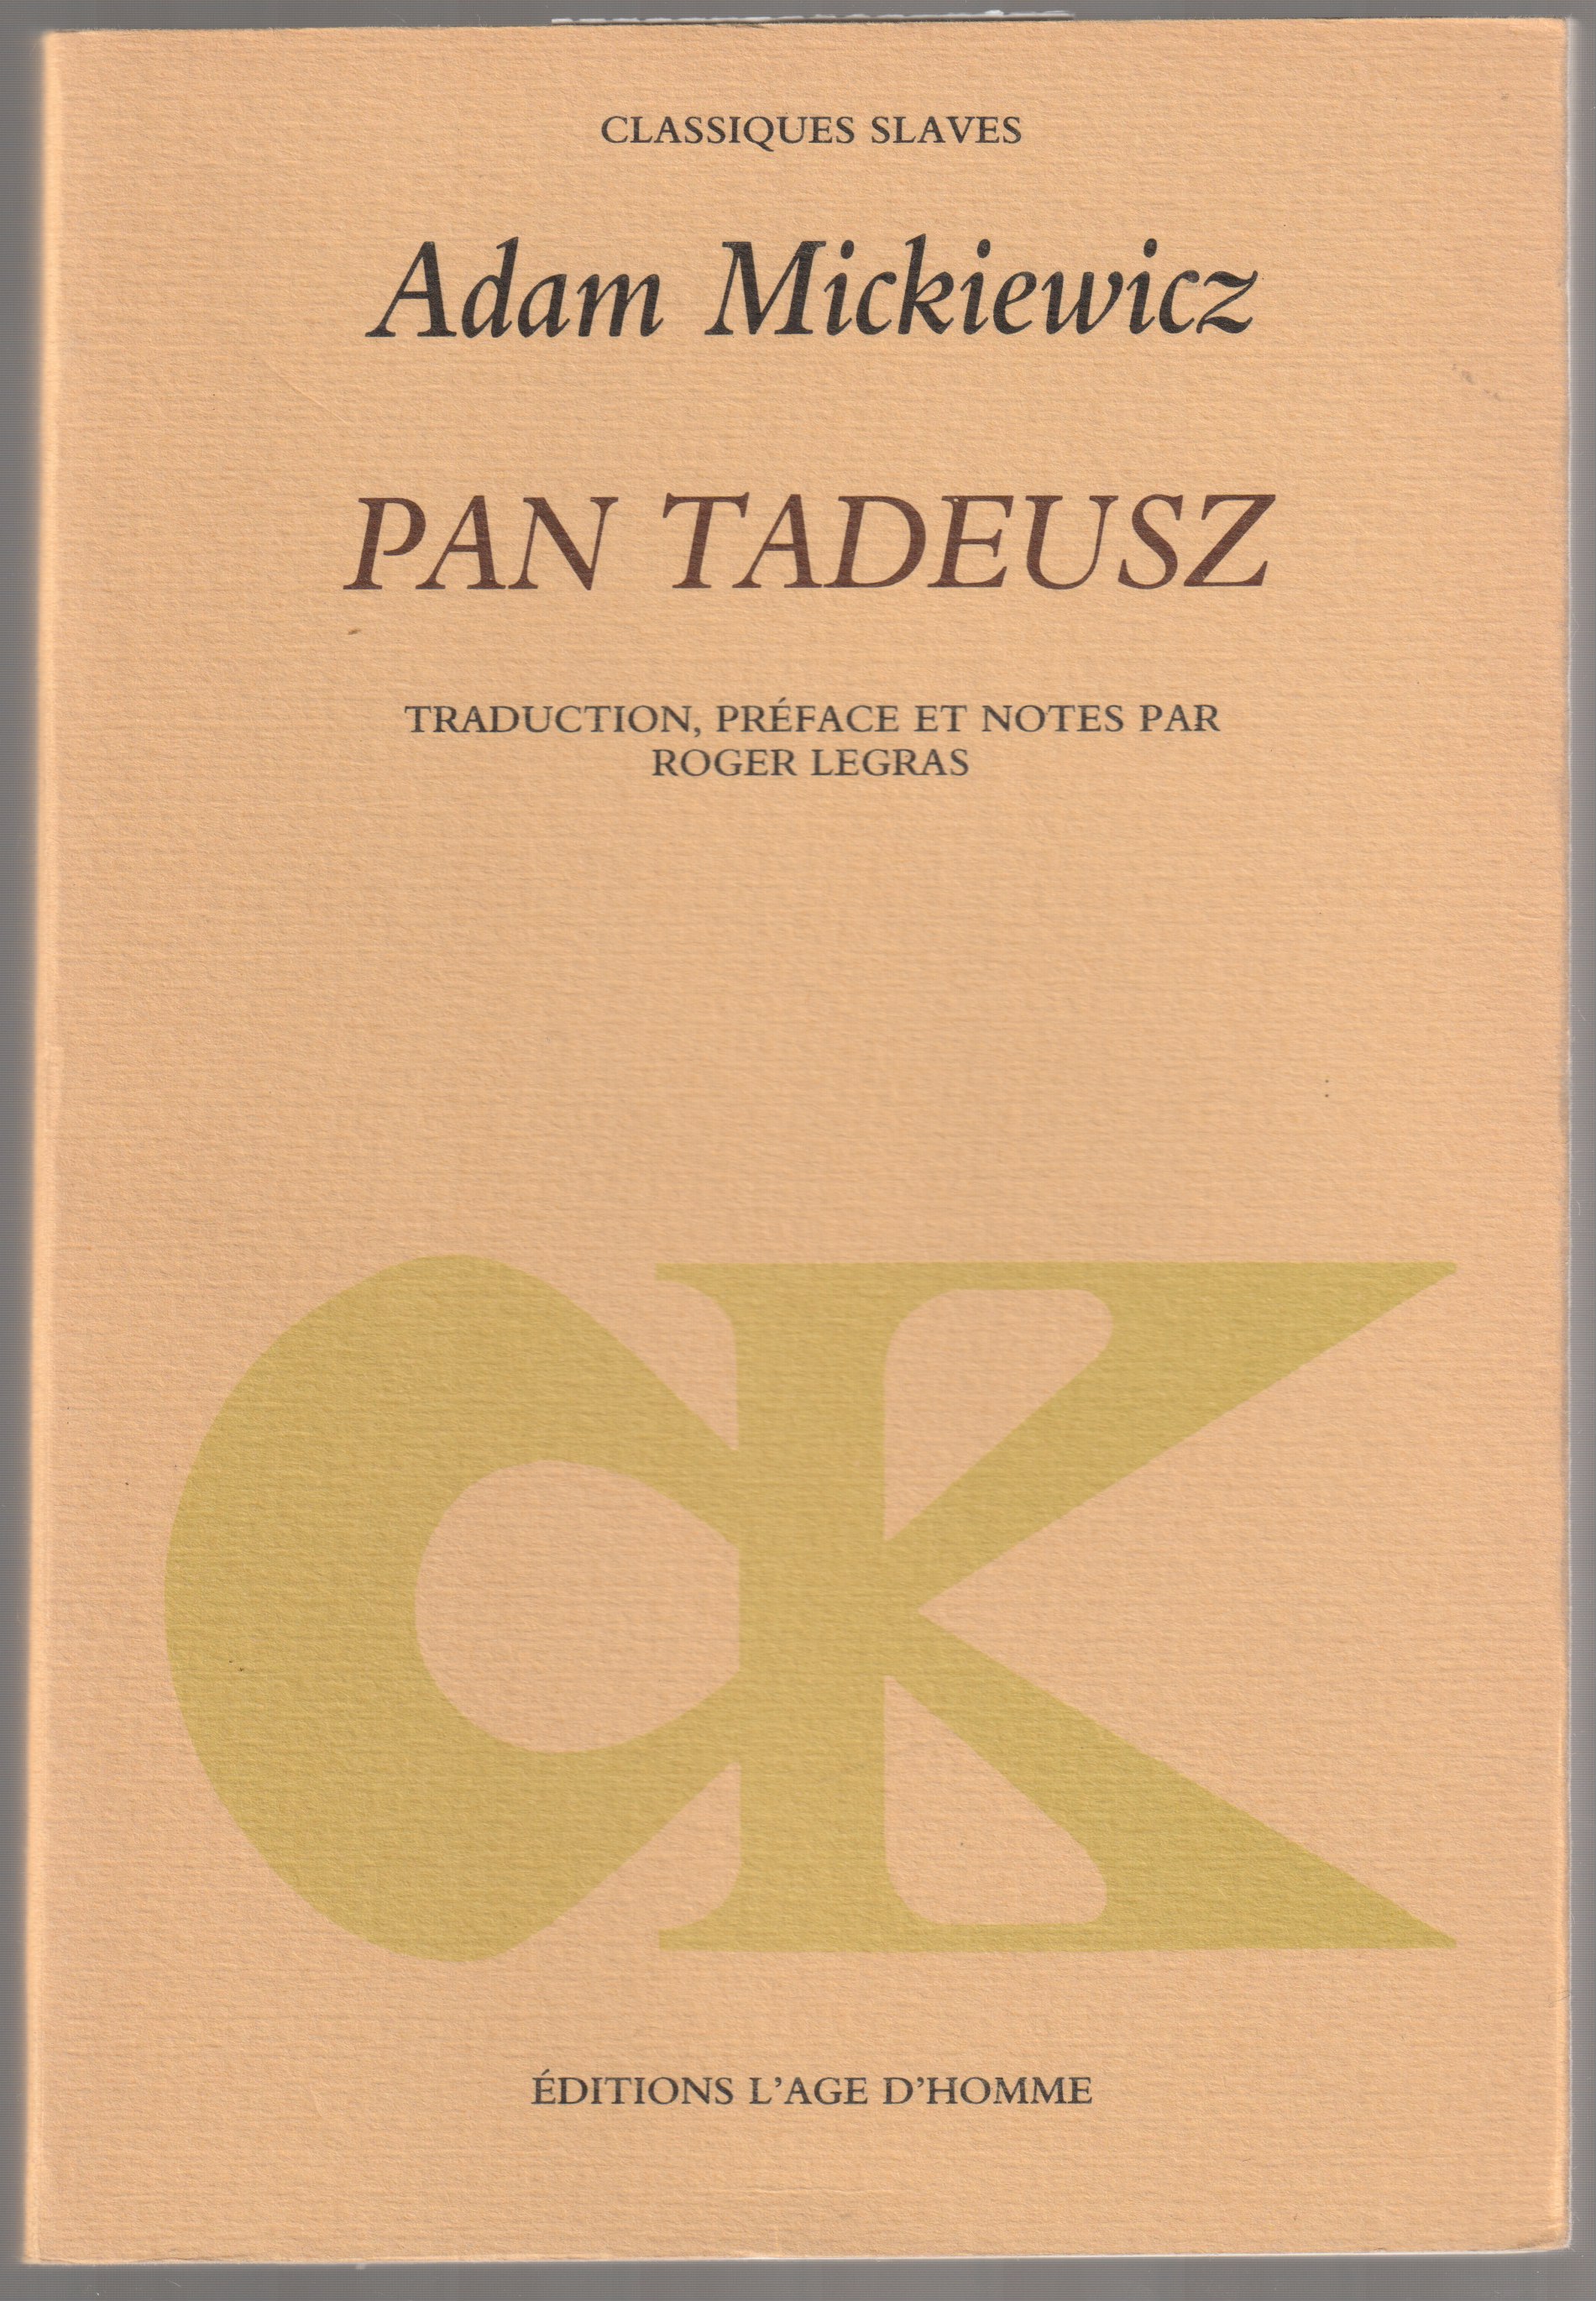 Pan Tadeusz ou La derniere judiciaire dans la Lithuanie, au sein de la noblesse pendant les annees 1811 et 1812, en douze livres, en vers.